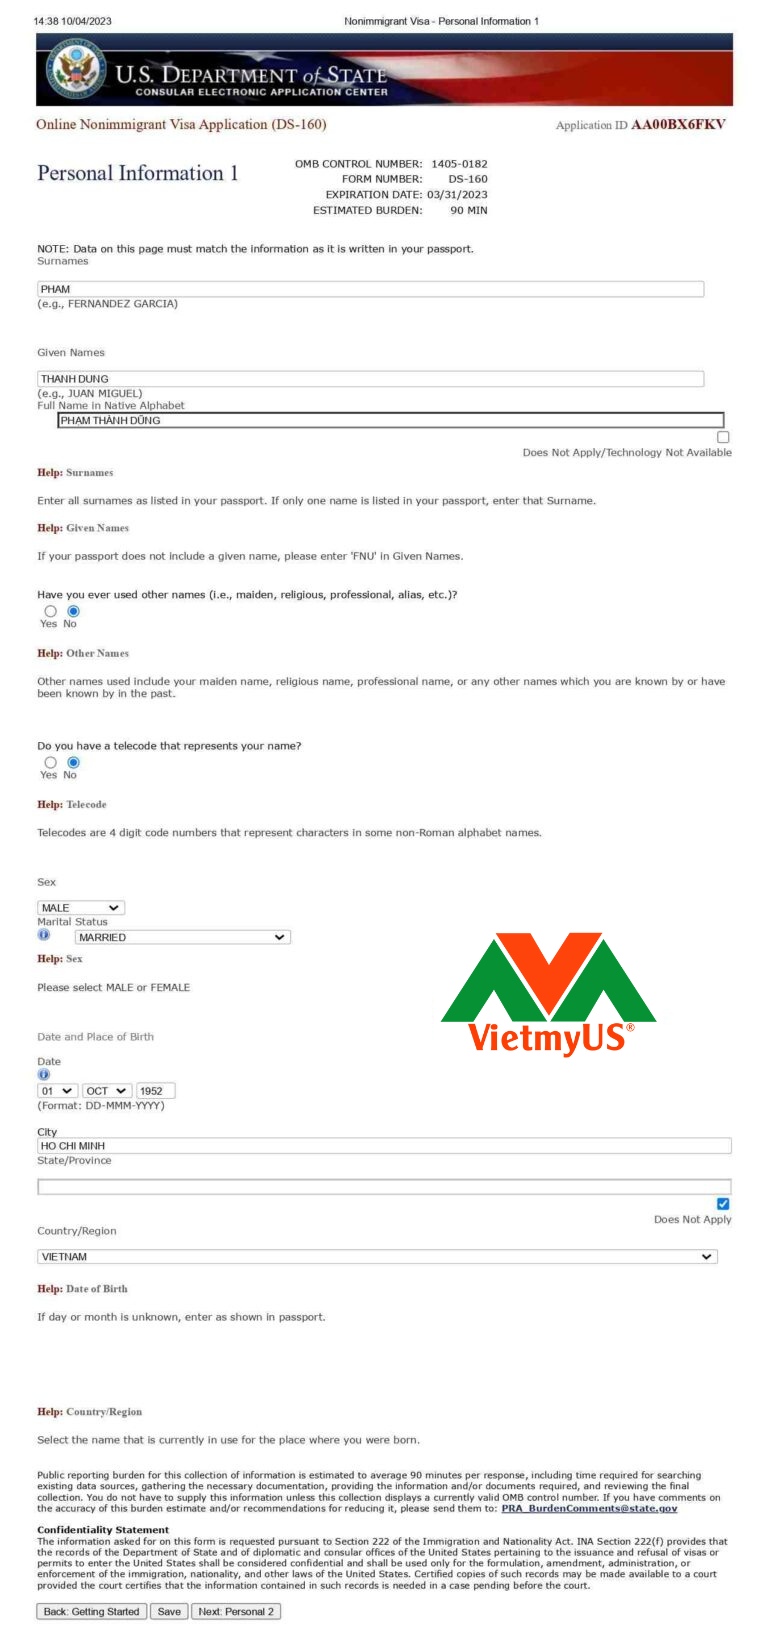 Hướng dẫn làm visa Mỹ chi tiết, mới nhất, đầy đủ nhất - VietmyUS